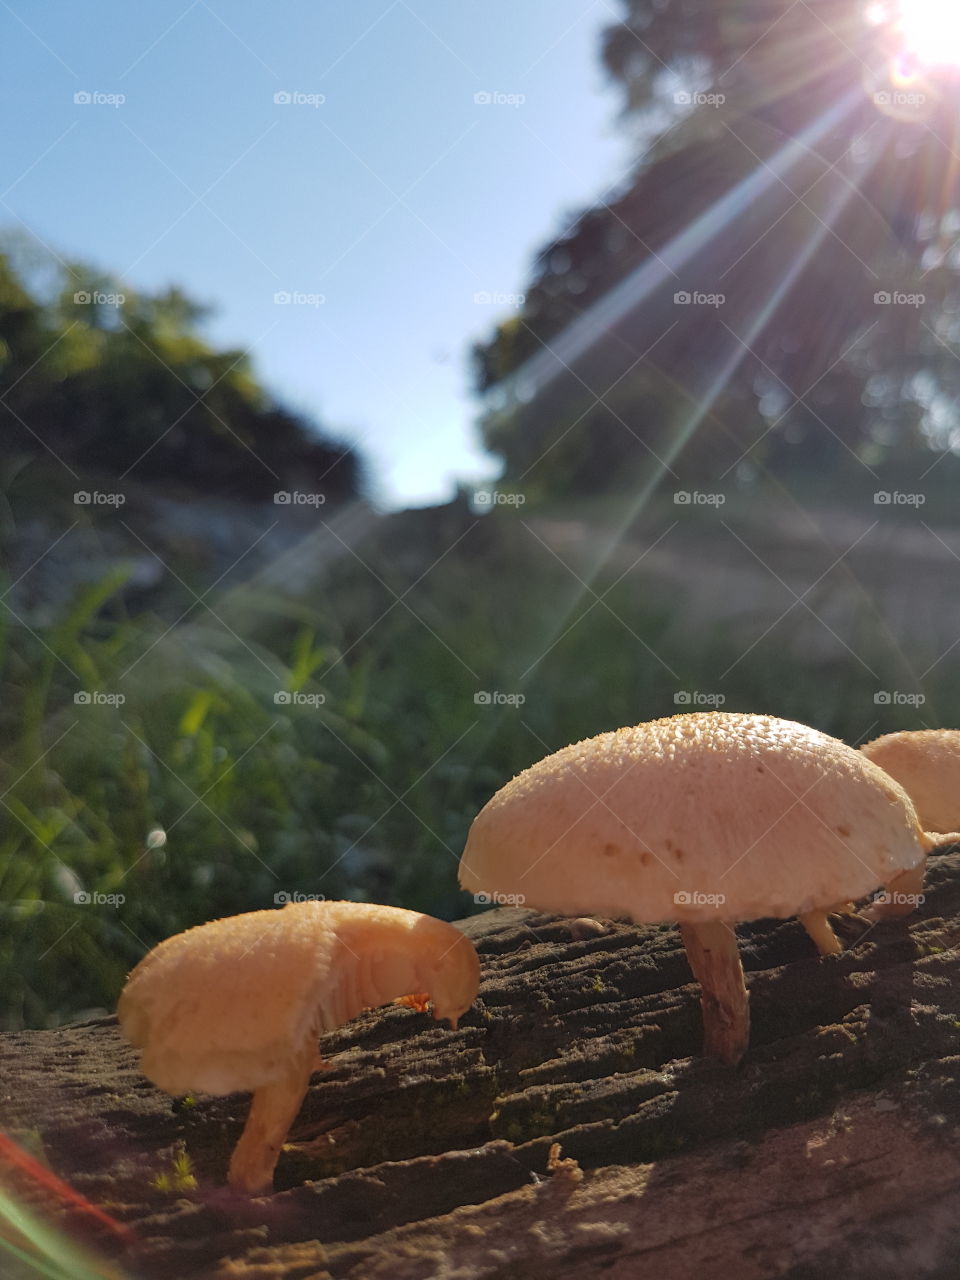 Beautiful nature around you! Simples cogumelos crescendo em um tronco em decomposiçao, iluminados com a luz do sol pela manhã transformam a simples rua onde eu moro, em um lugar incrível!A natureza é bela e perfeita sempre!Só depende de nós saber ver